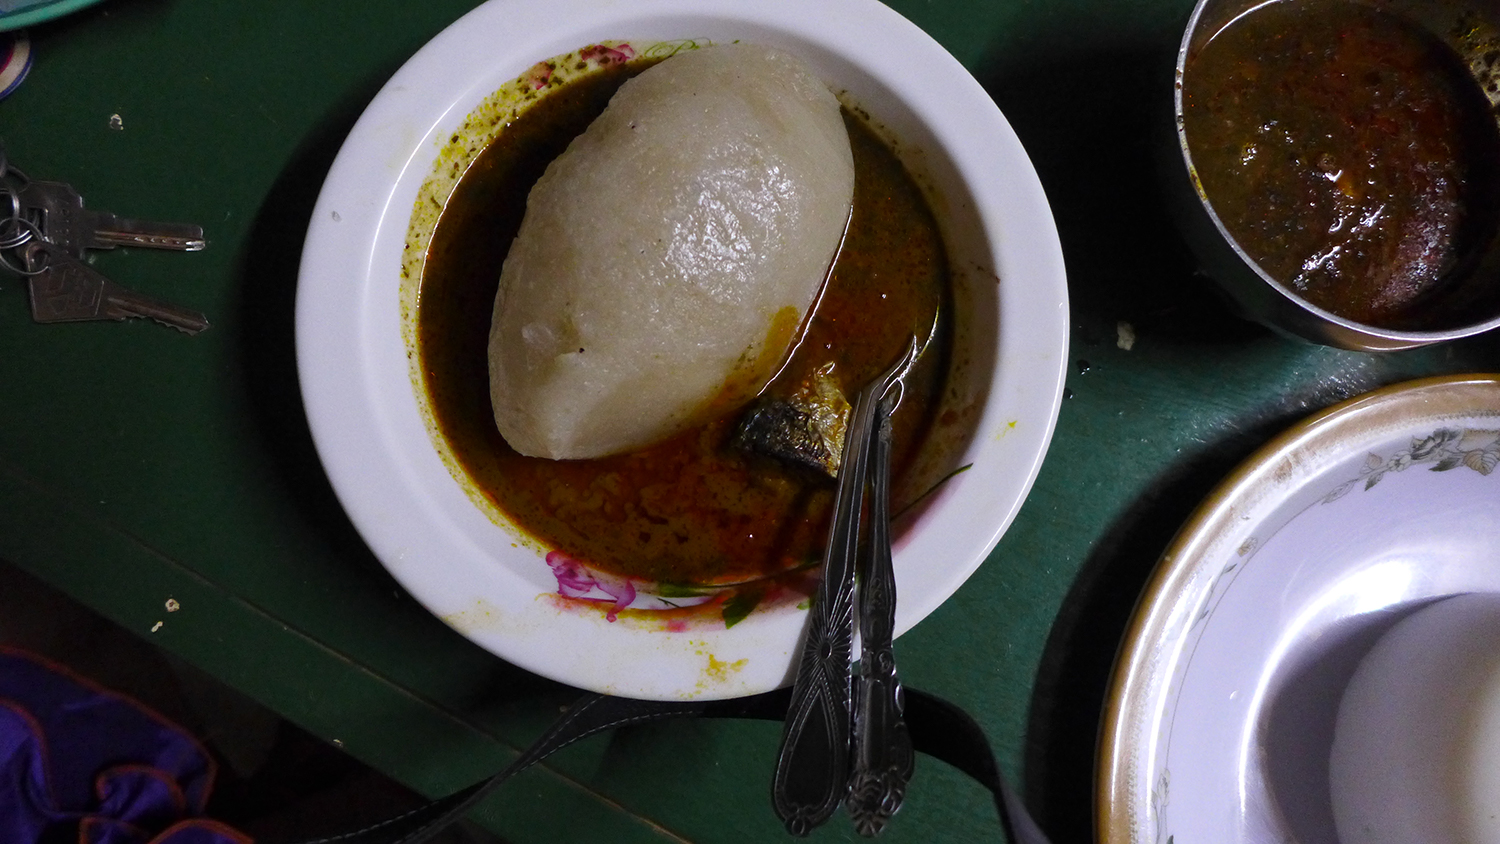 Voici le placali, un plat d’origine ivoirienne, mais qui est très populaire à Ouagadougou. Il est composé d’une boule de farine de manioc cuisinée avec de la sauce à l’oseille et du poisson. 